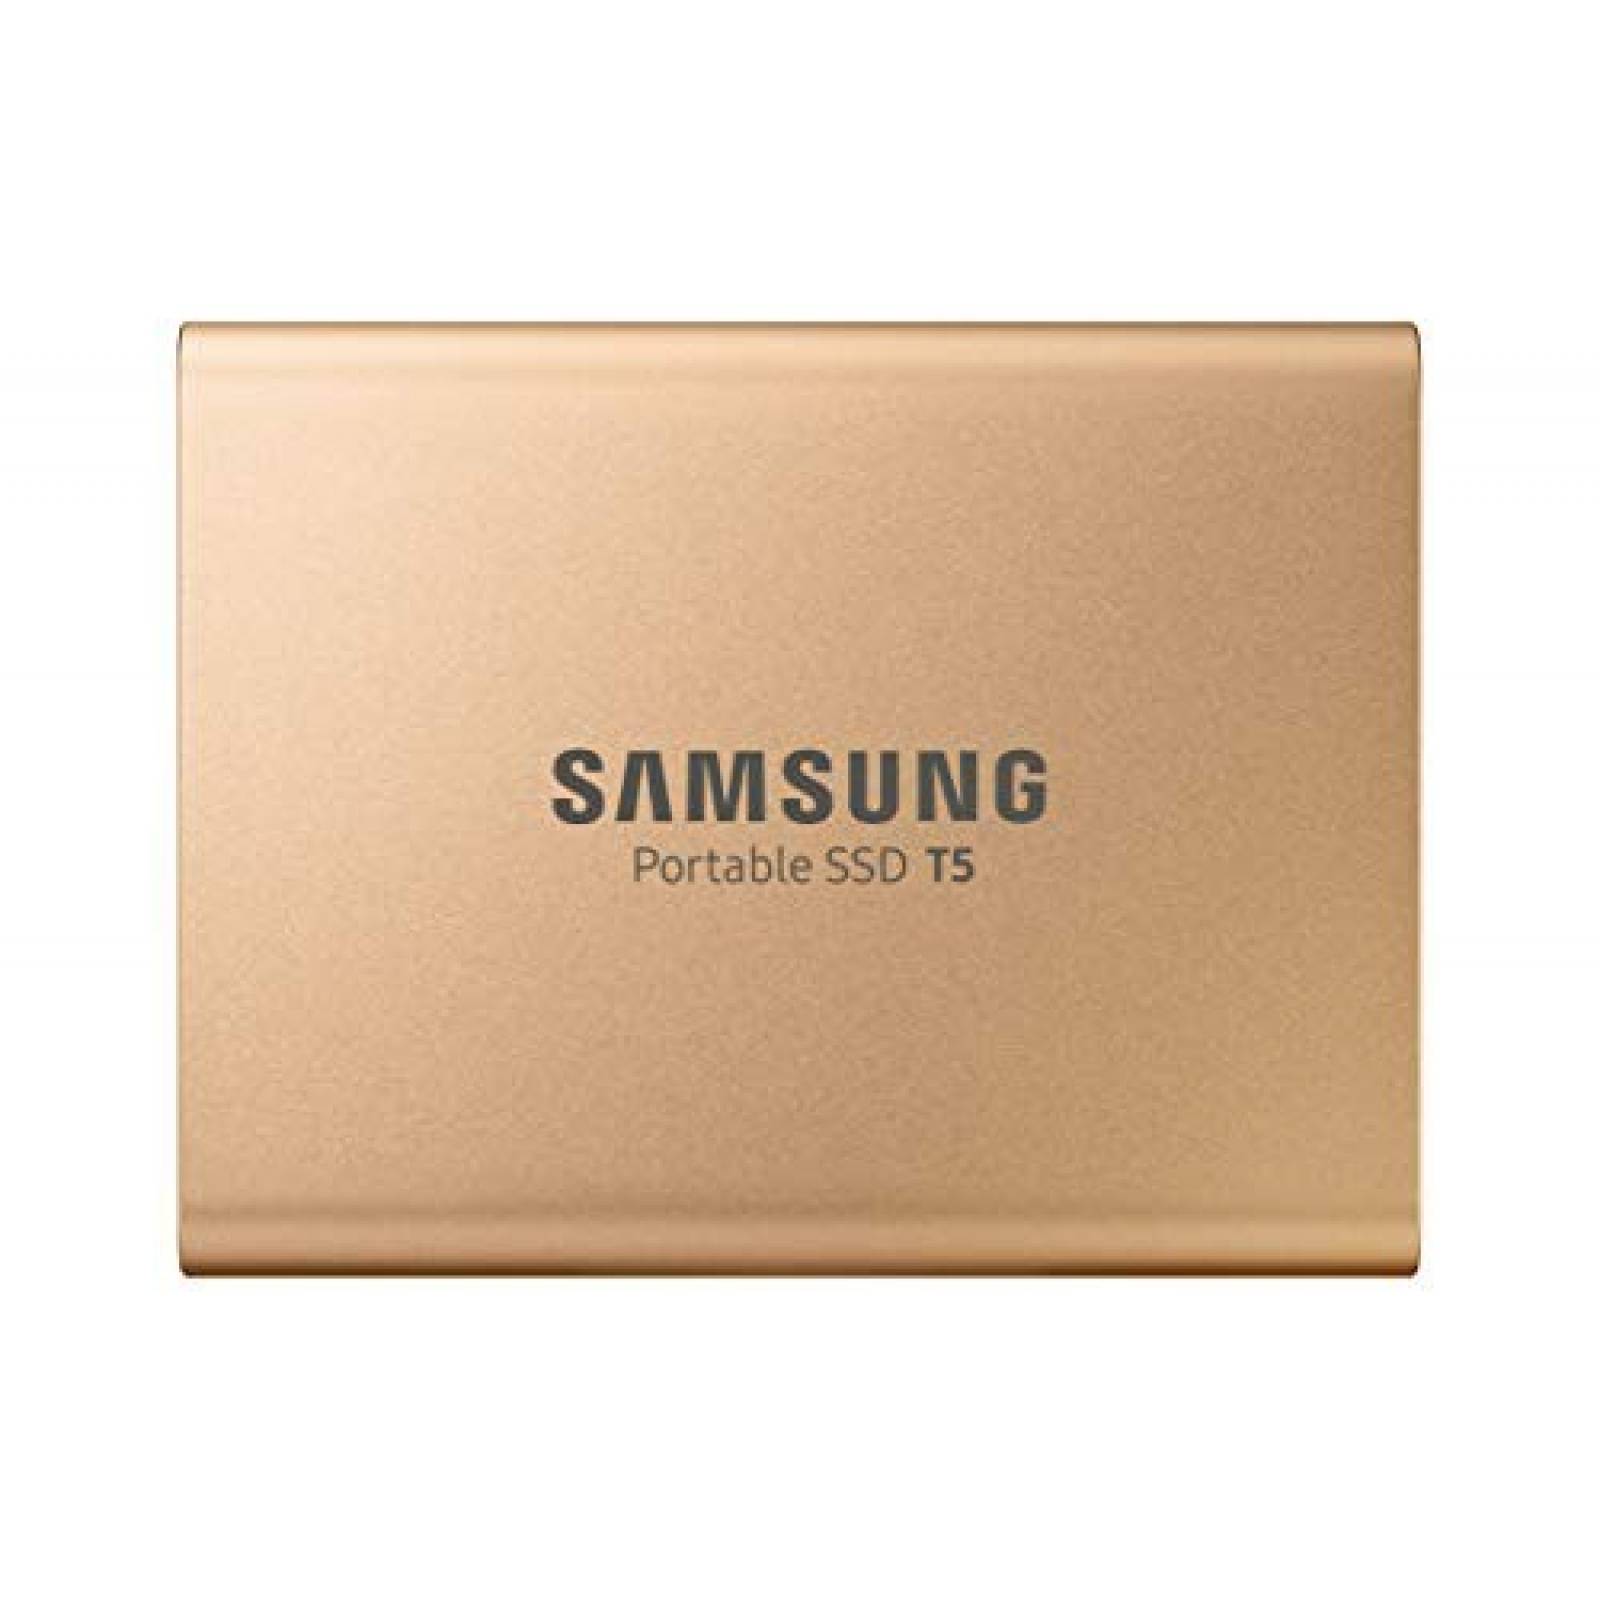 SSD portátil Samsung T5 500 GB USB 3.1 -dorado